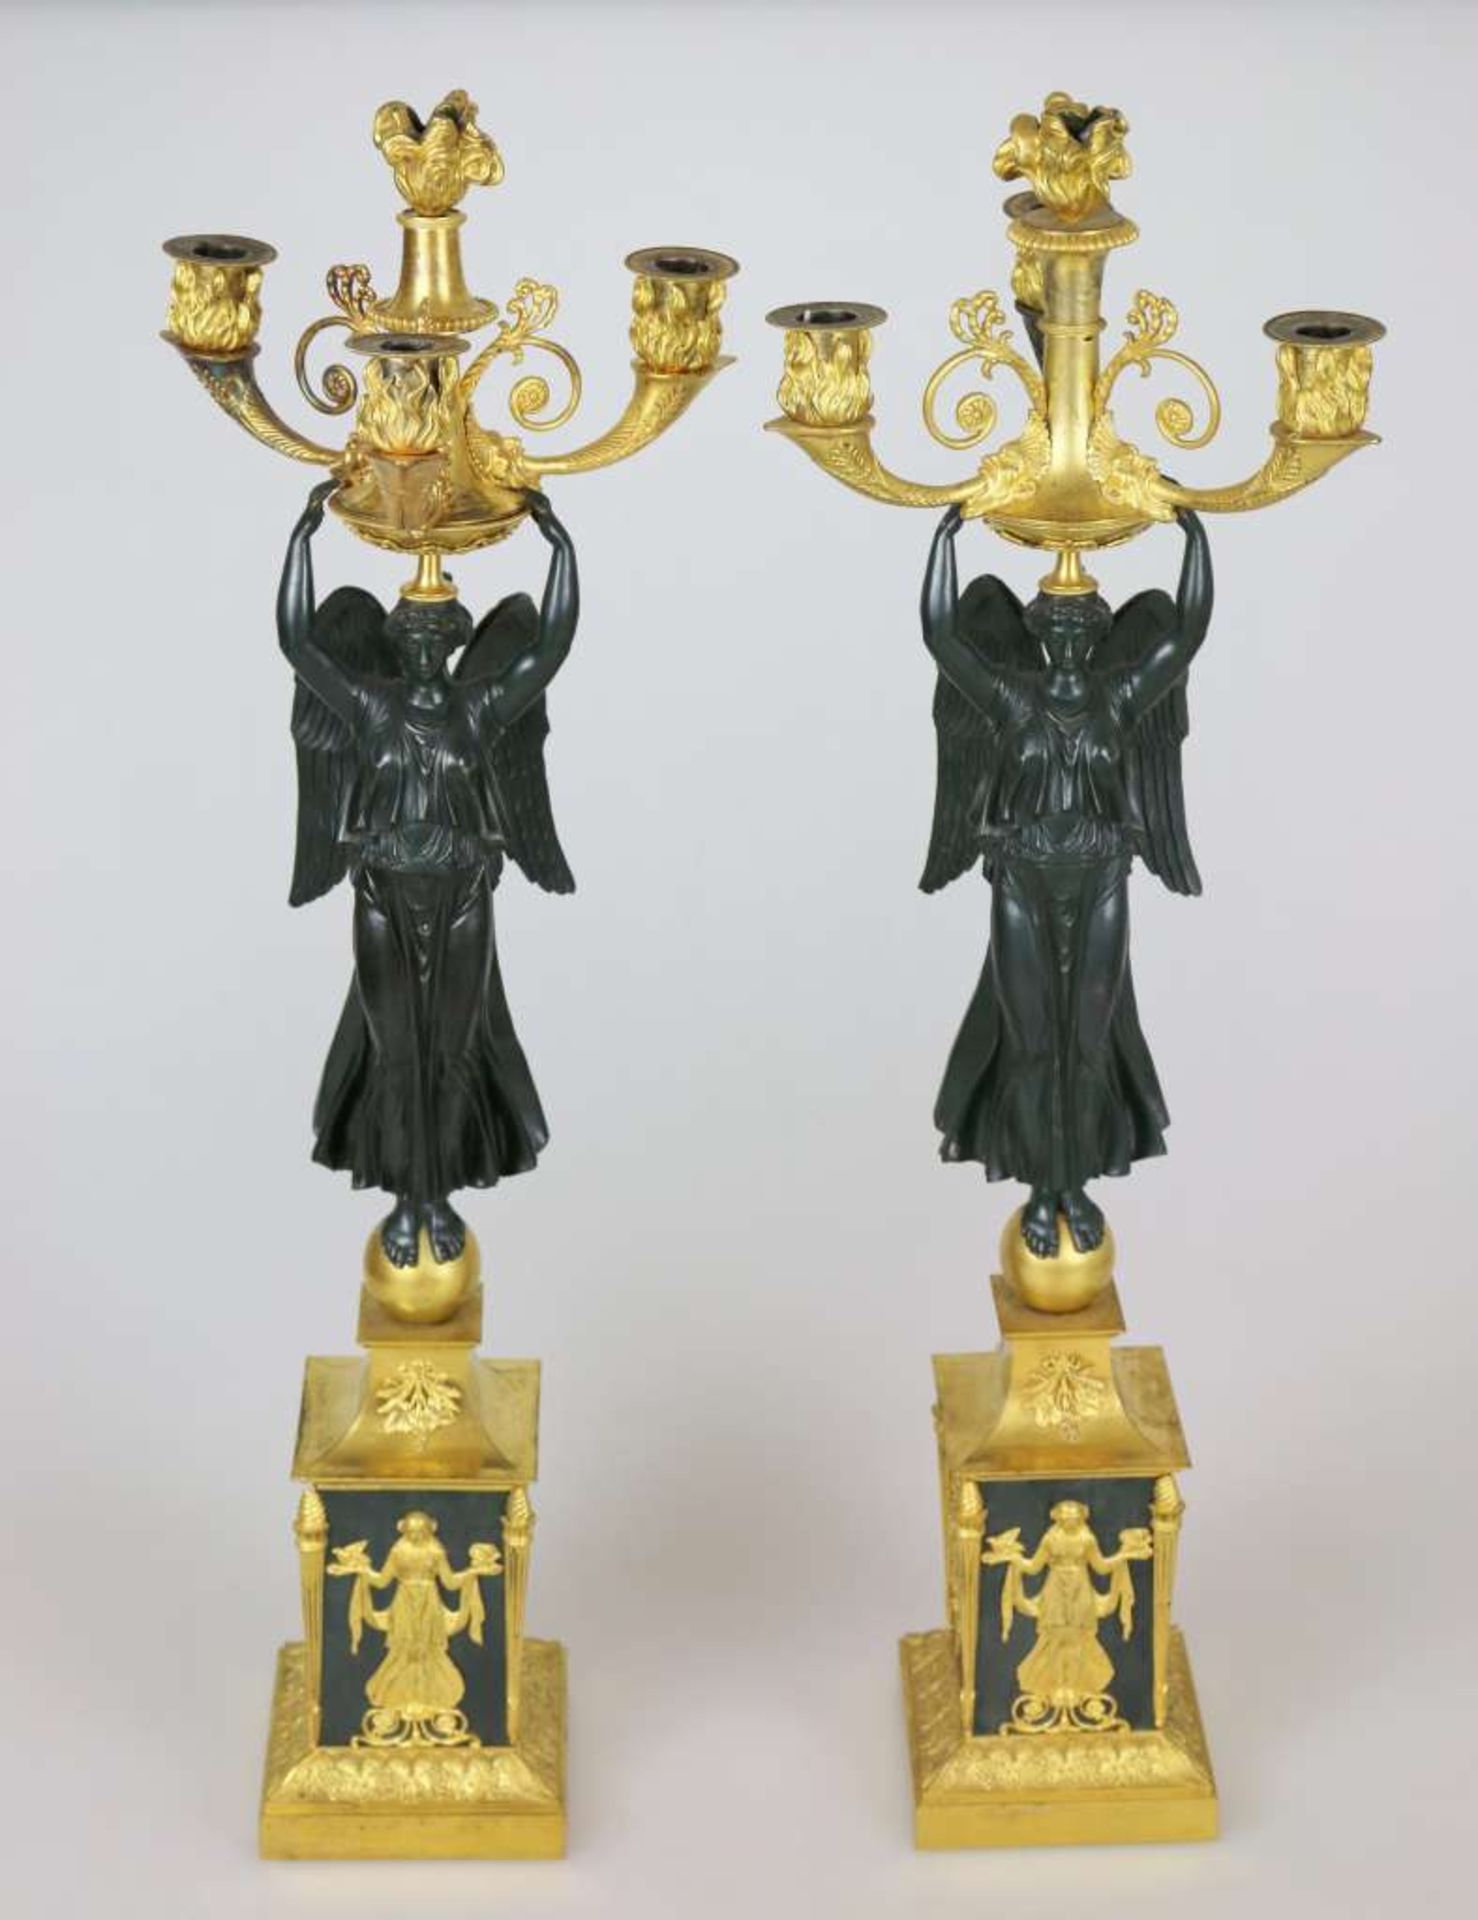 Paar Girandolen "AUX VICTOIRES", Empire, P.P. THOMIRE zuzuschreiben, Paris um 1810/15. Bronze